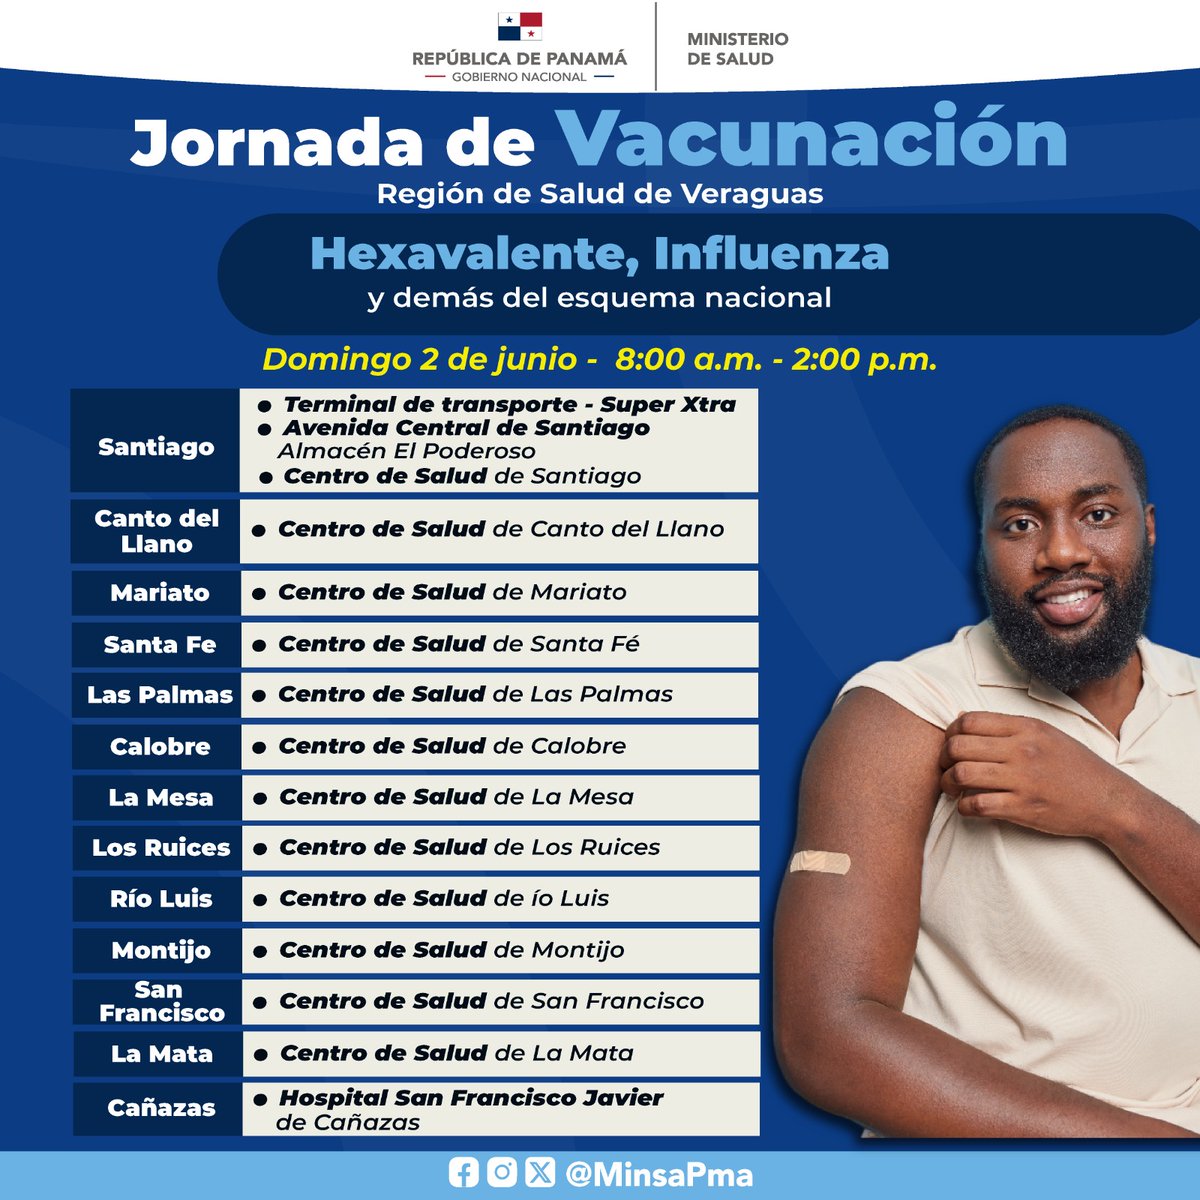 Te invitamos a participar de la Jornada de Vacunación en la Región de Salud de Veraguas, este 2 de junio, de las 8:00 a.m. a 2:00 p.m., en donde ofreceremos la vacunas Hexevalente, Influenza y demás dosis del esquema nacional, totalmente gratis.